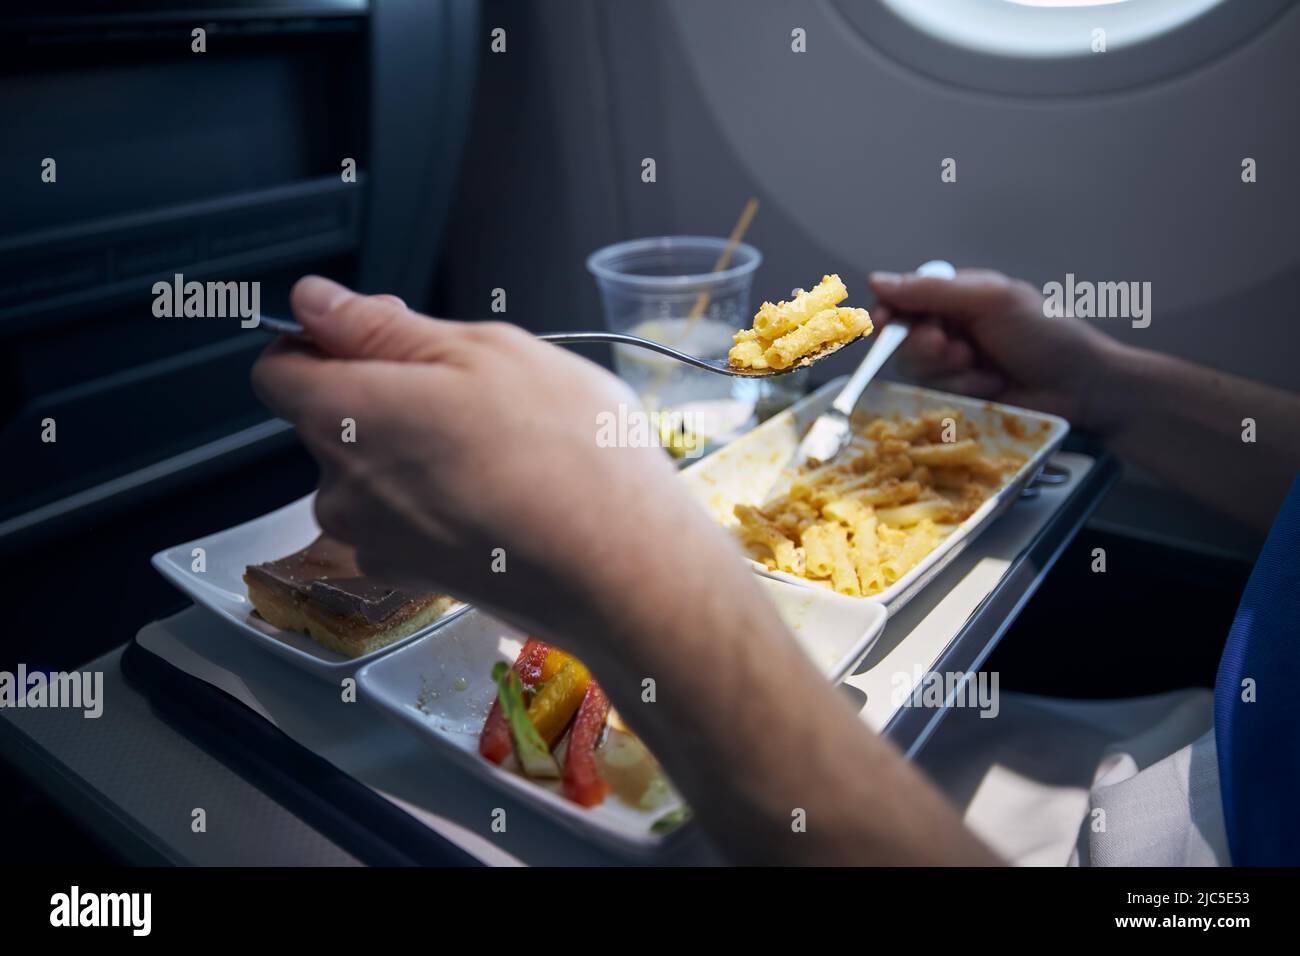 Passagier isst Flugzeugeessen mit Metallbesteck. Menü mit Pasta, Gemüse, Dessert und Getränken auf dem Tablett während des Langstreckenfluges. Stockfoto